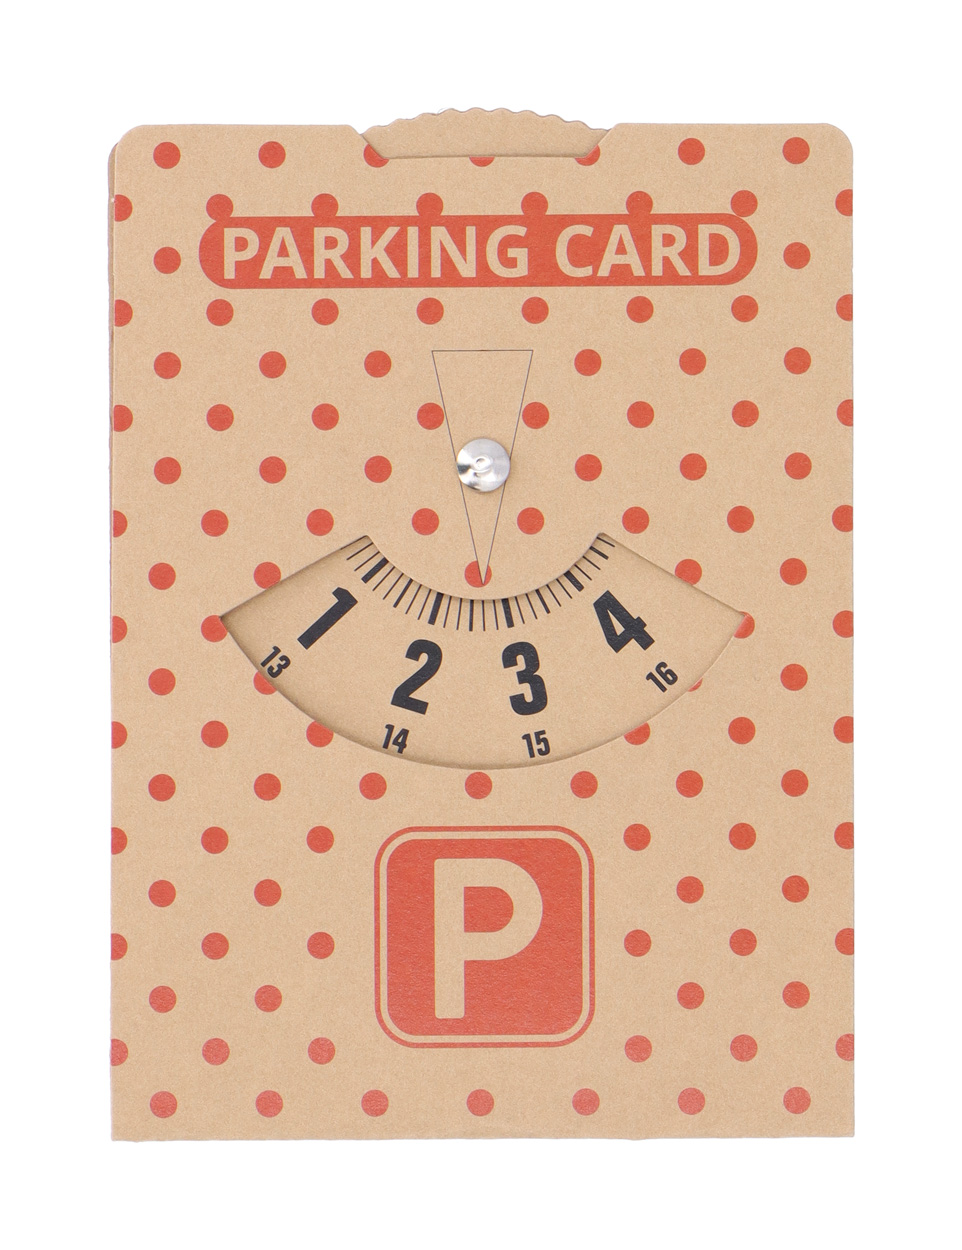 CreaPark Eco parking card